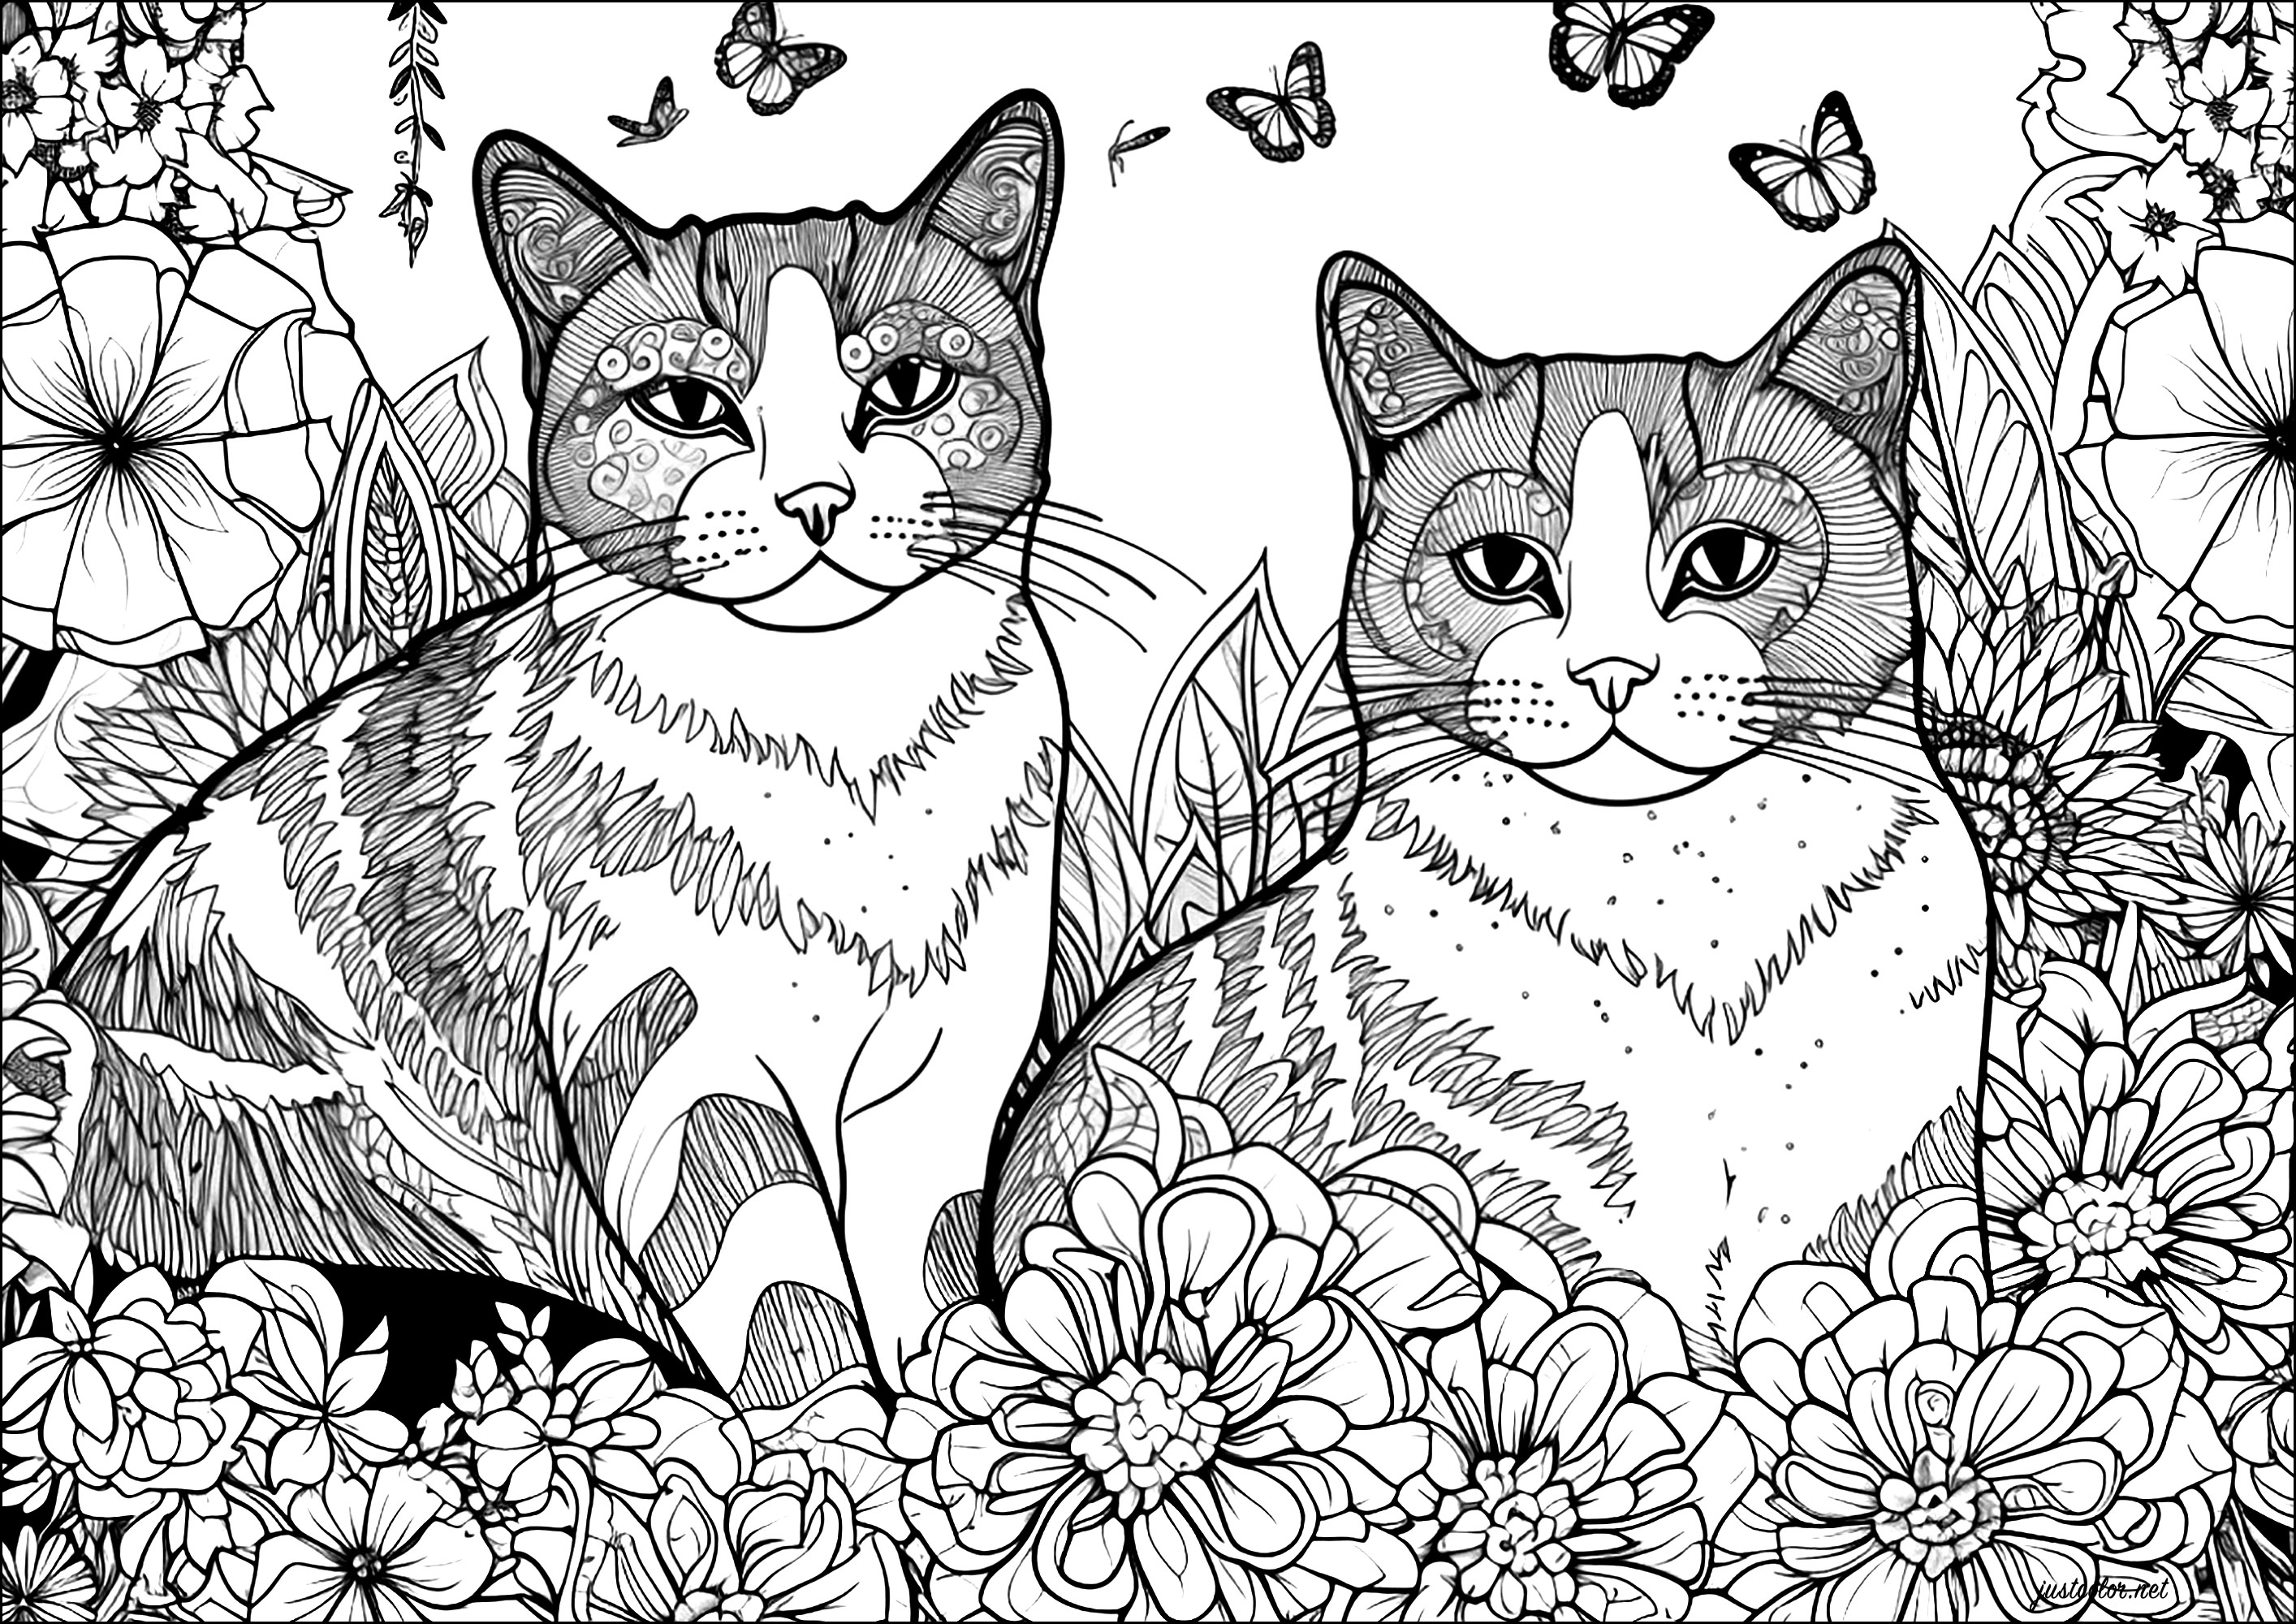 Dois gatos com flores e borboletas. Um design complexo cheio de pormenores bonitos